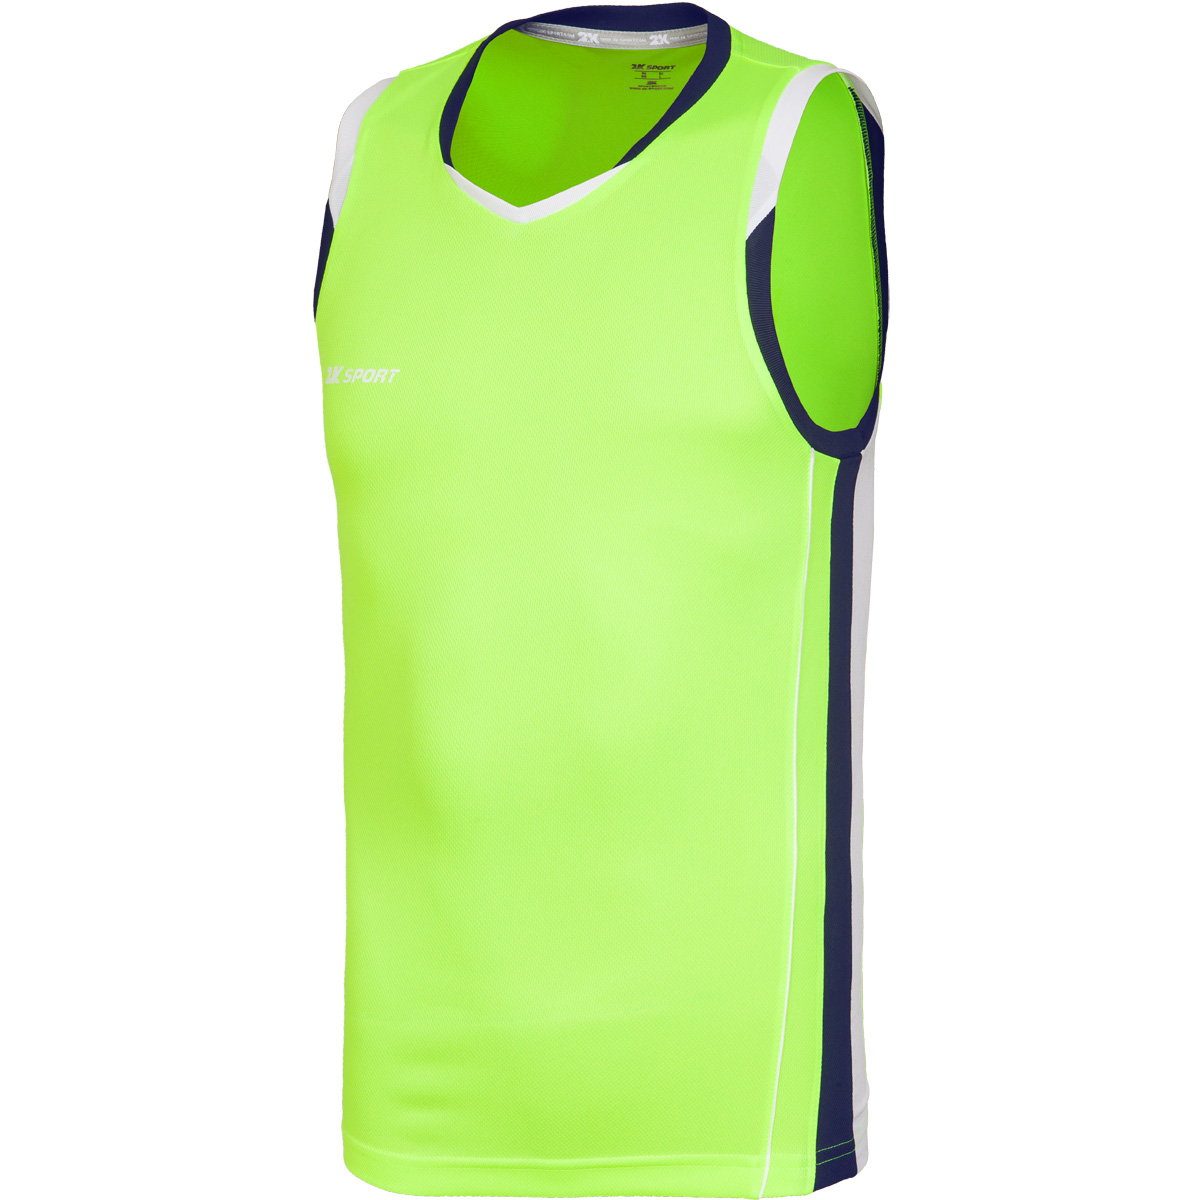 Майка баскетбольная мужская 2K Sport Advance, цвет: неоново-желтый, темно-синий, белый. 130030. Размер XS (44)